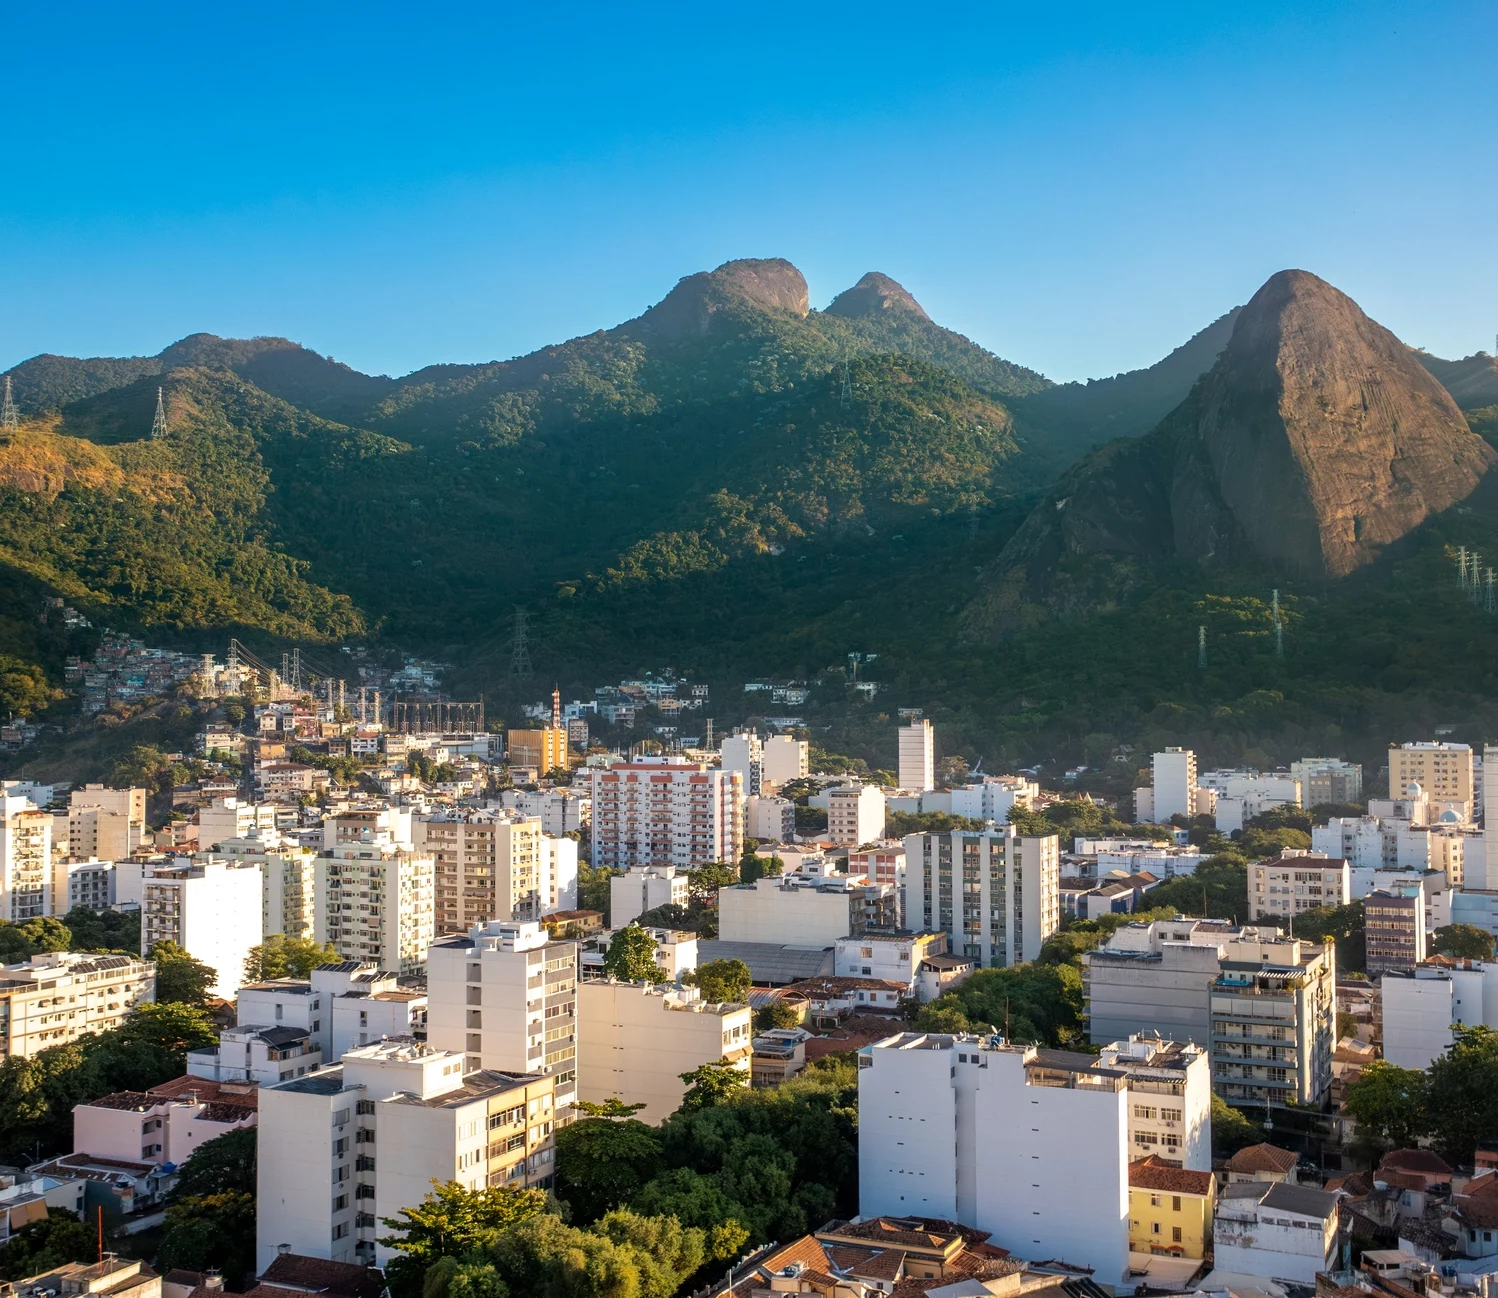 Em seguida, o Rio de Janeiro é o segundo município mais rico do Brasil